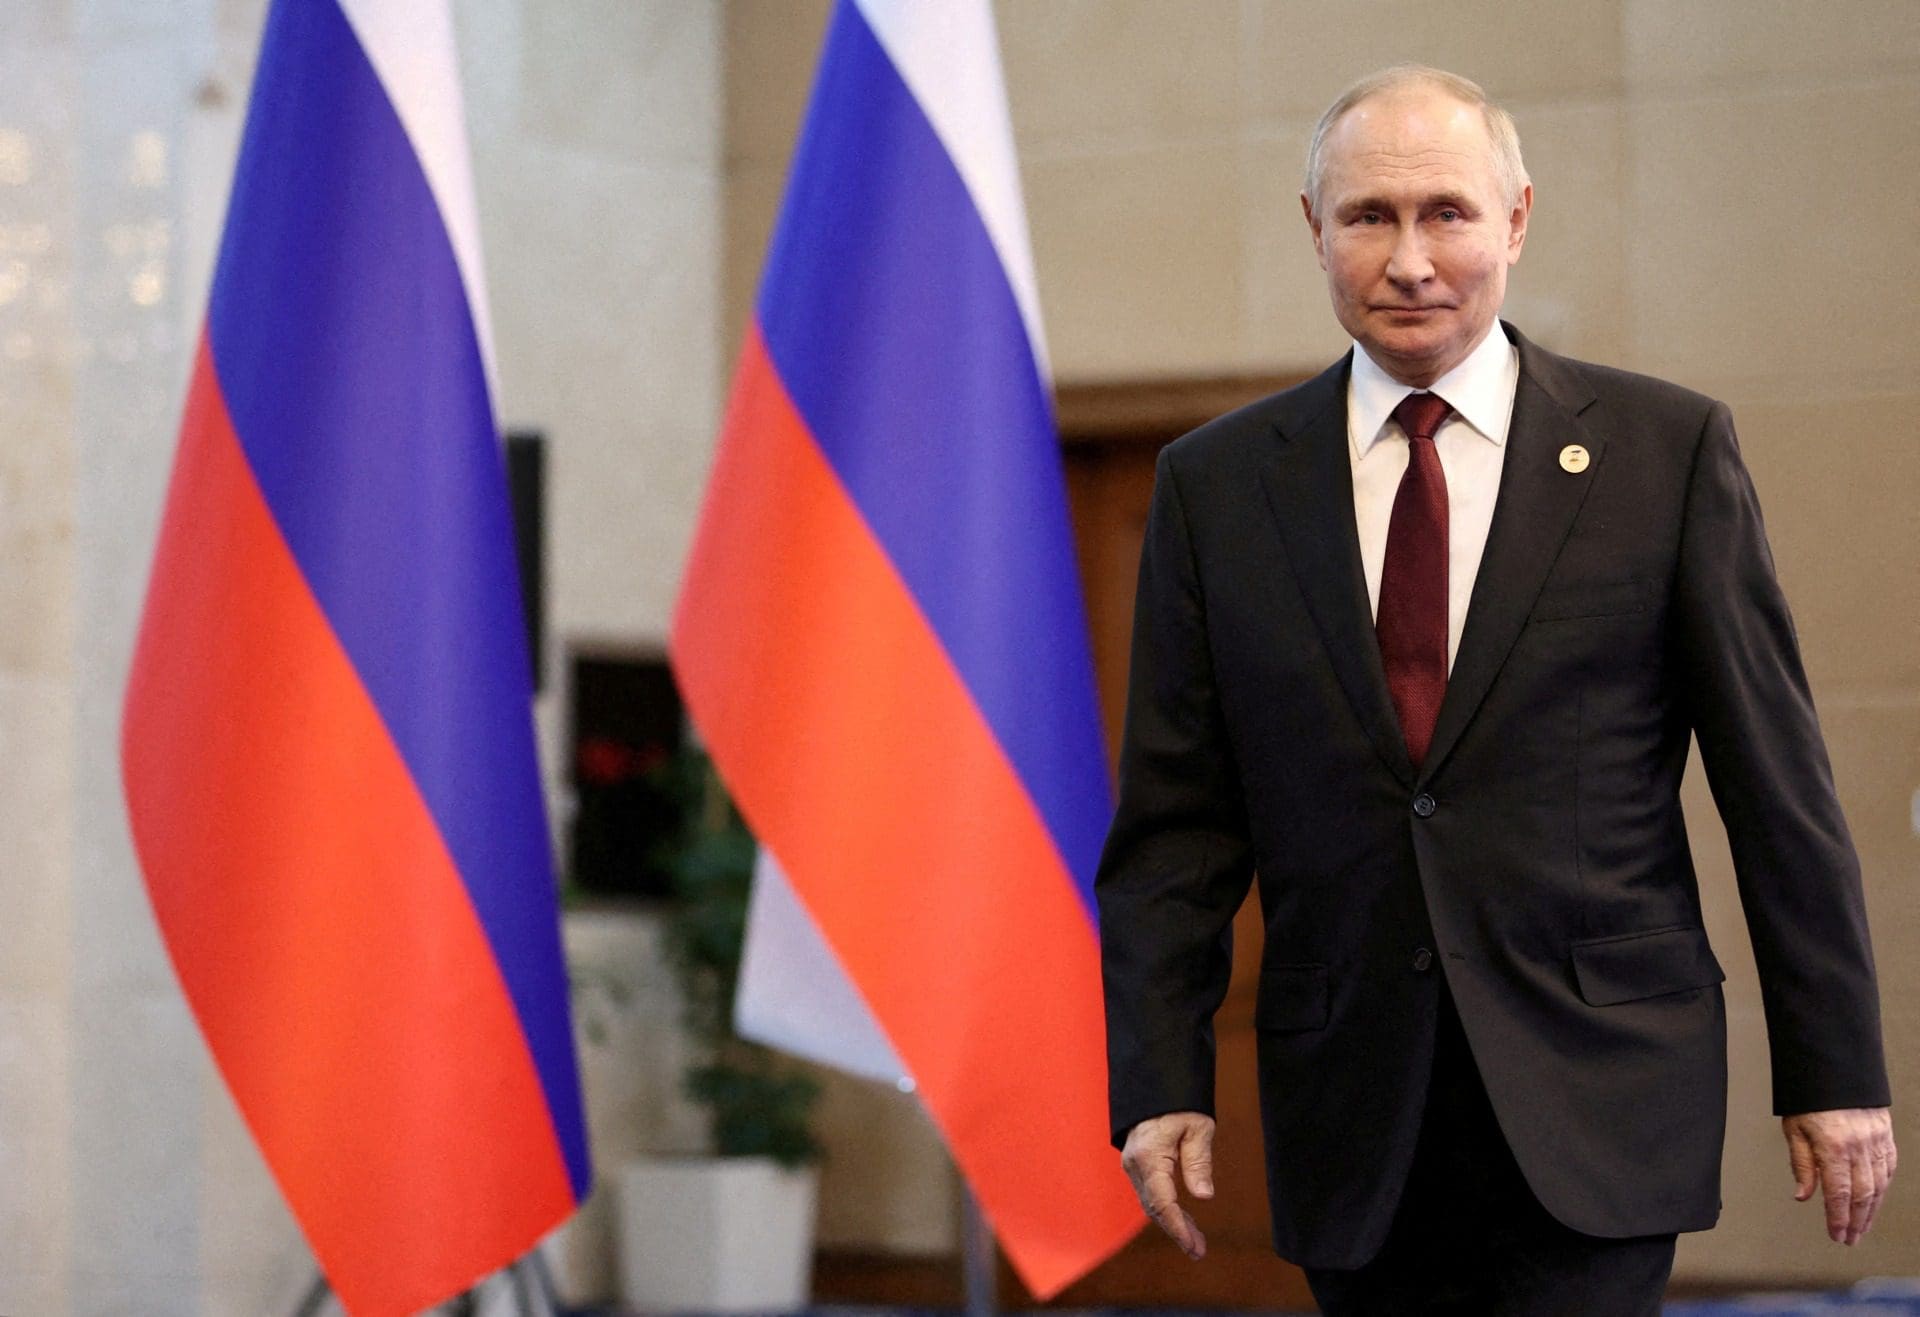 Putin diz não saber se poderá confiar num eventual acordo de paz com Kiev